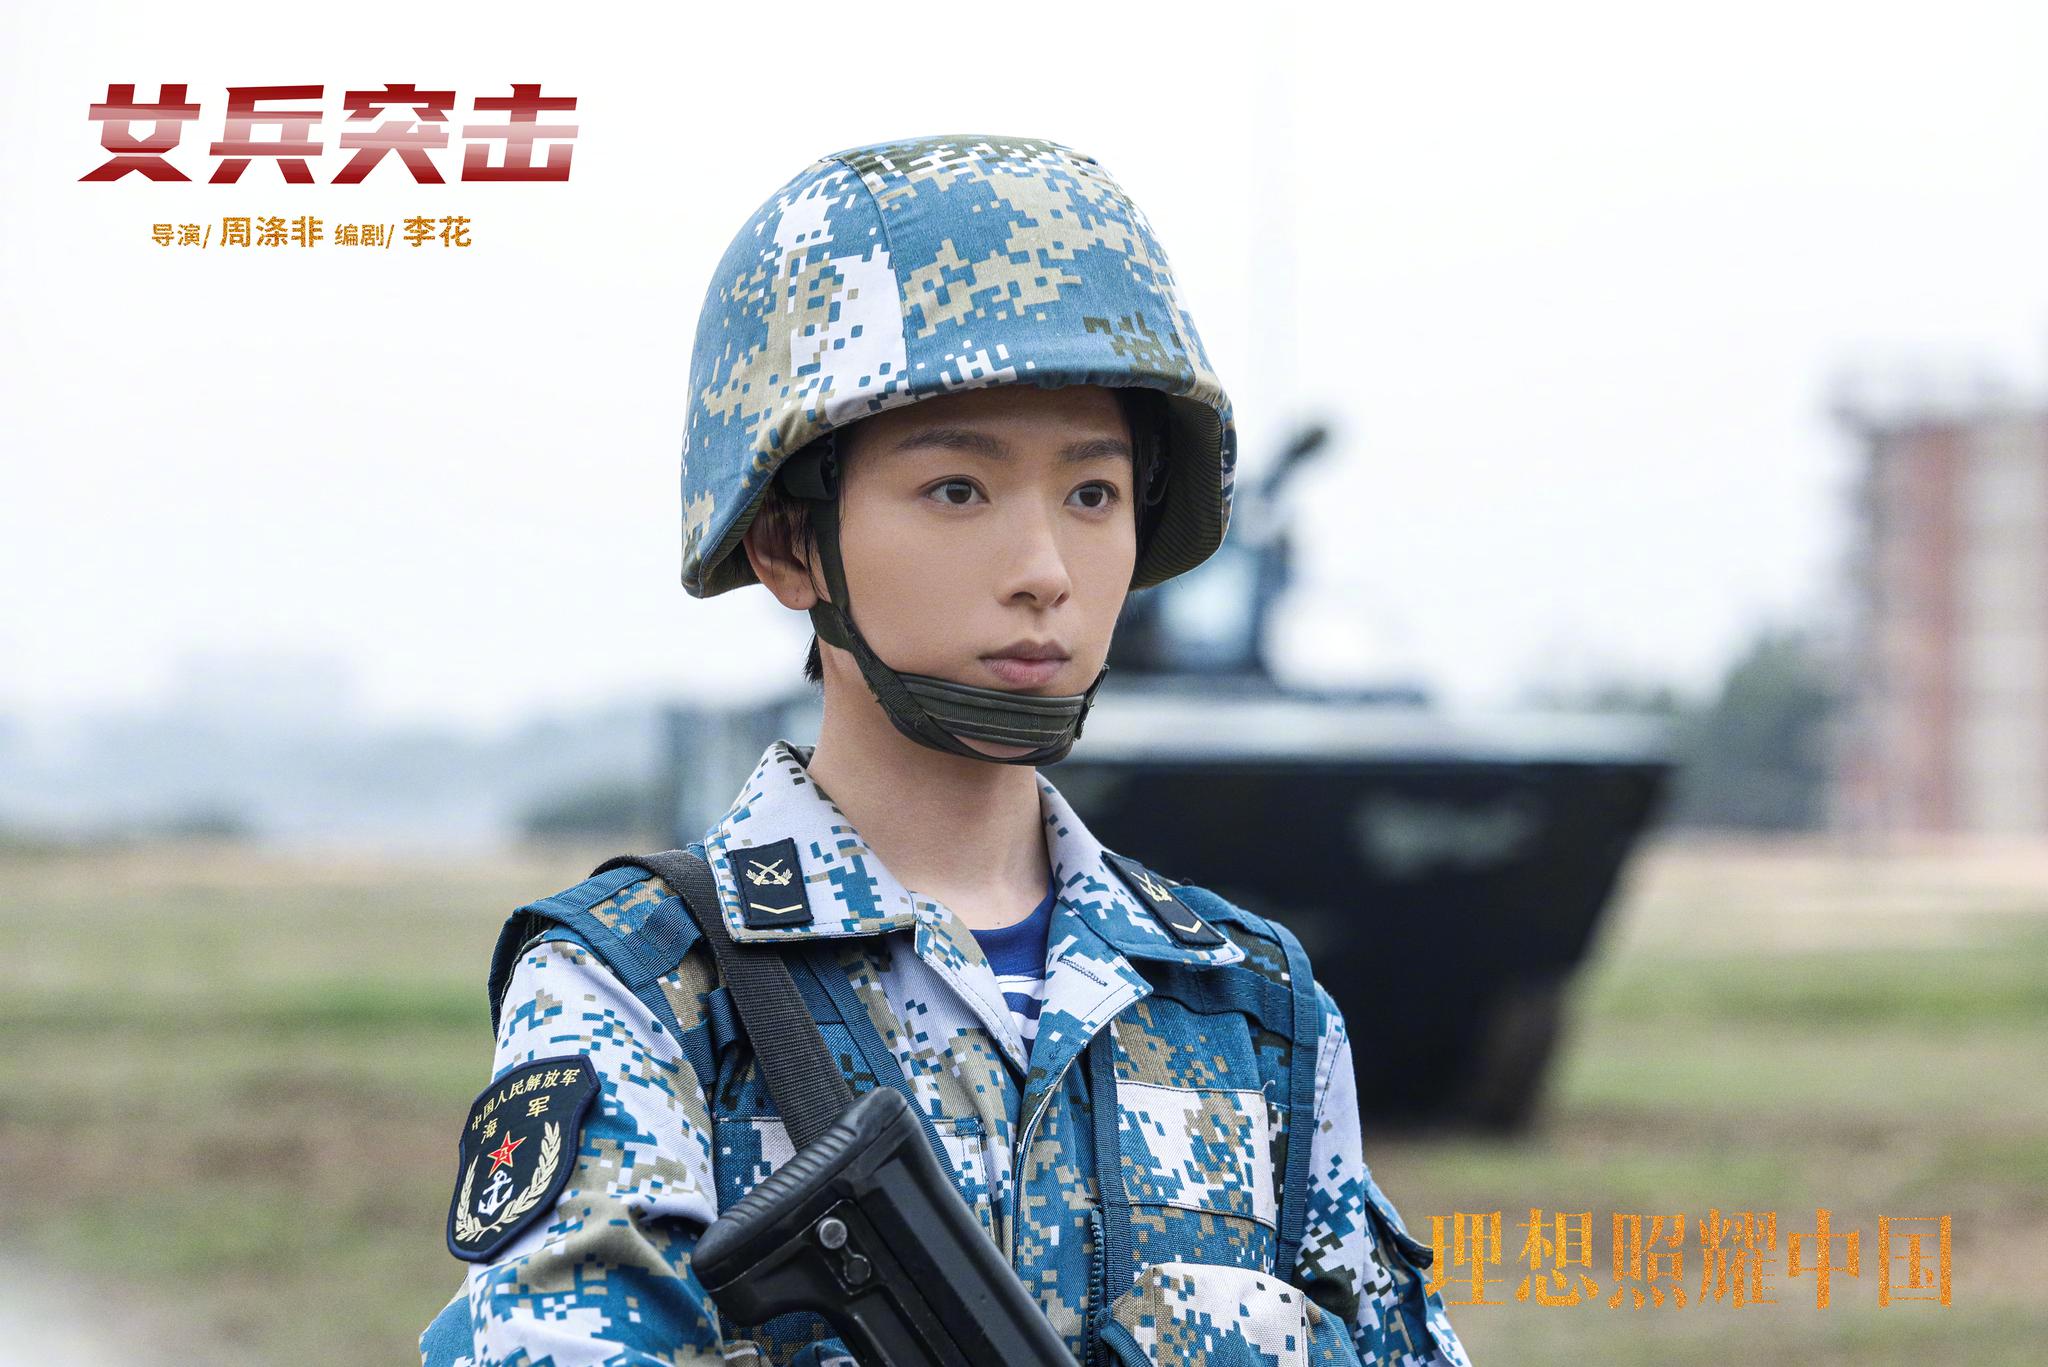 《理想照耀中国》之《女兵突击》今日发布首波剧照